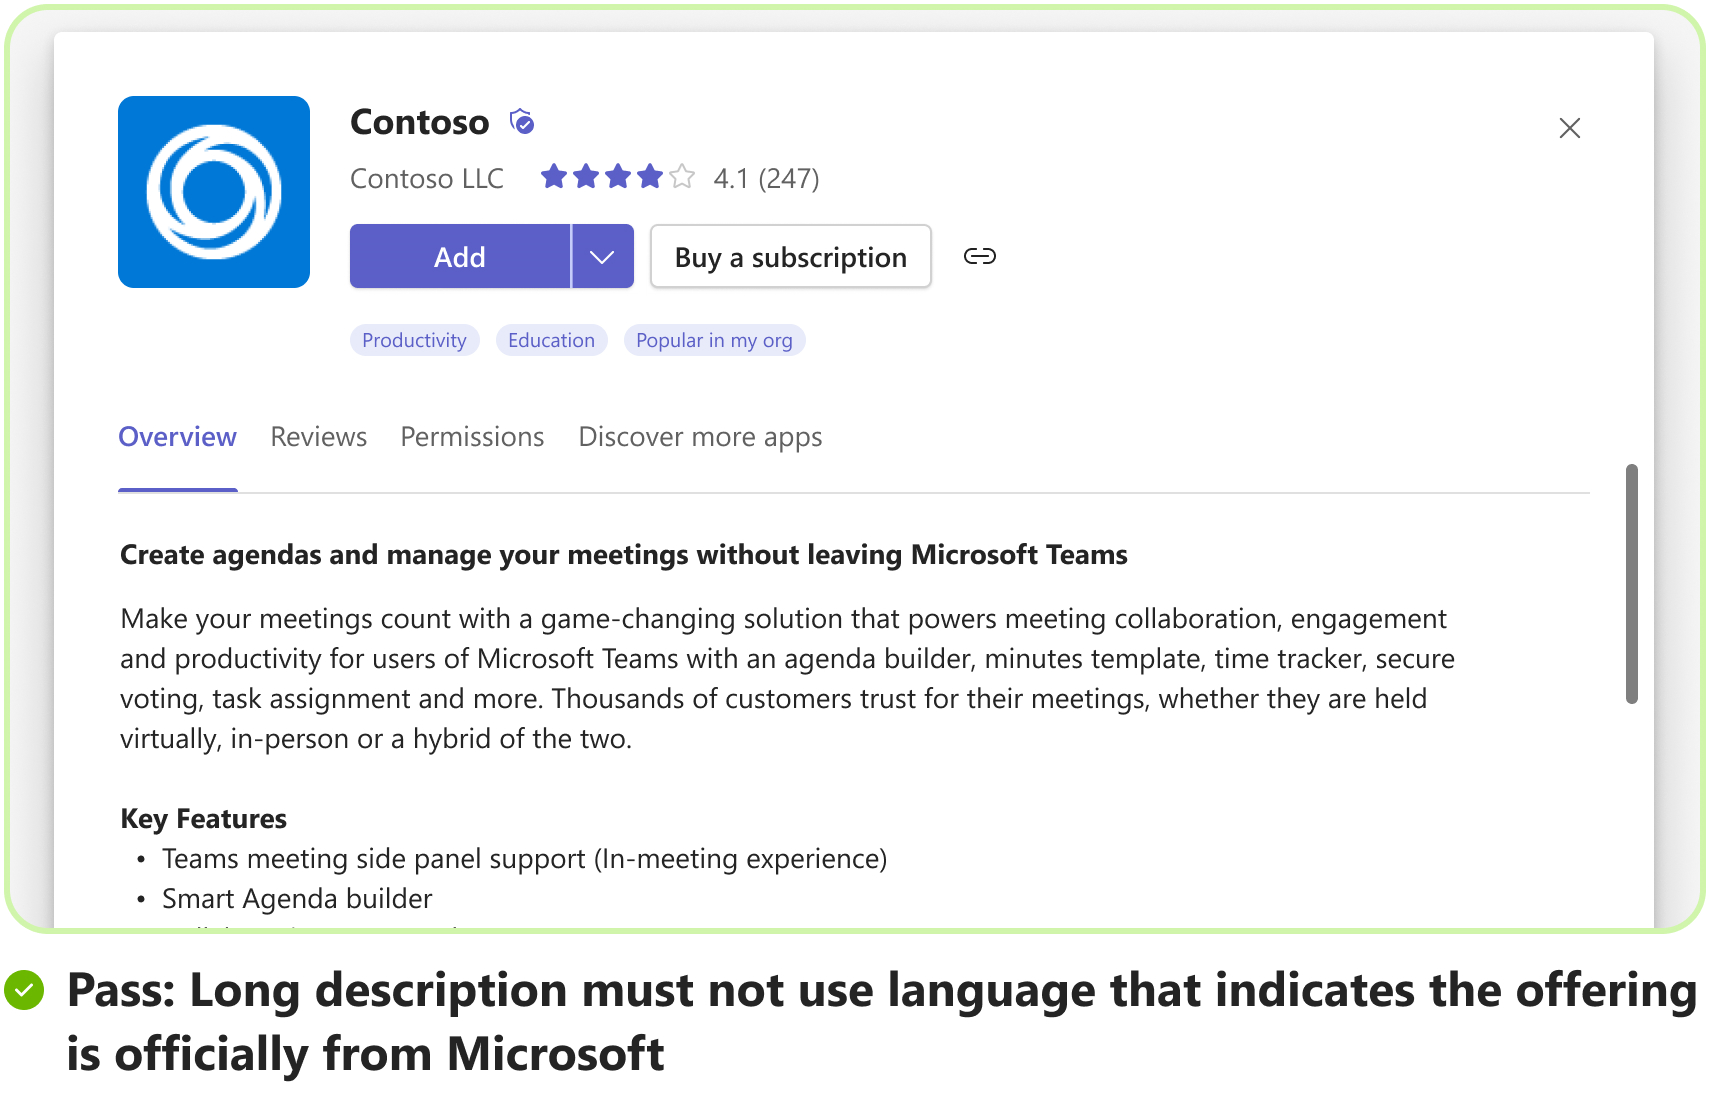 Captura de pantalla de la imagen para mostrar el escenario pasado de una descripción larga de Microsoft.